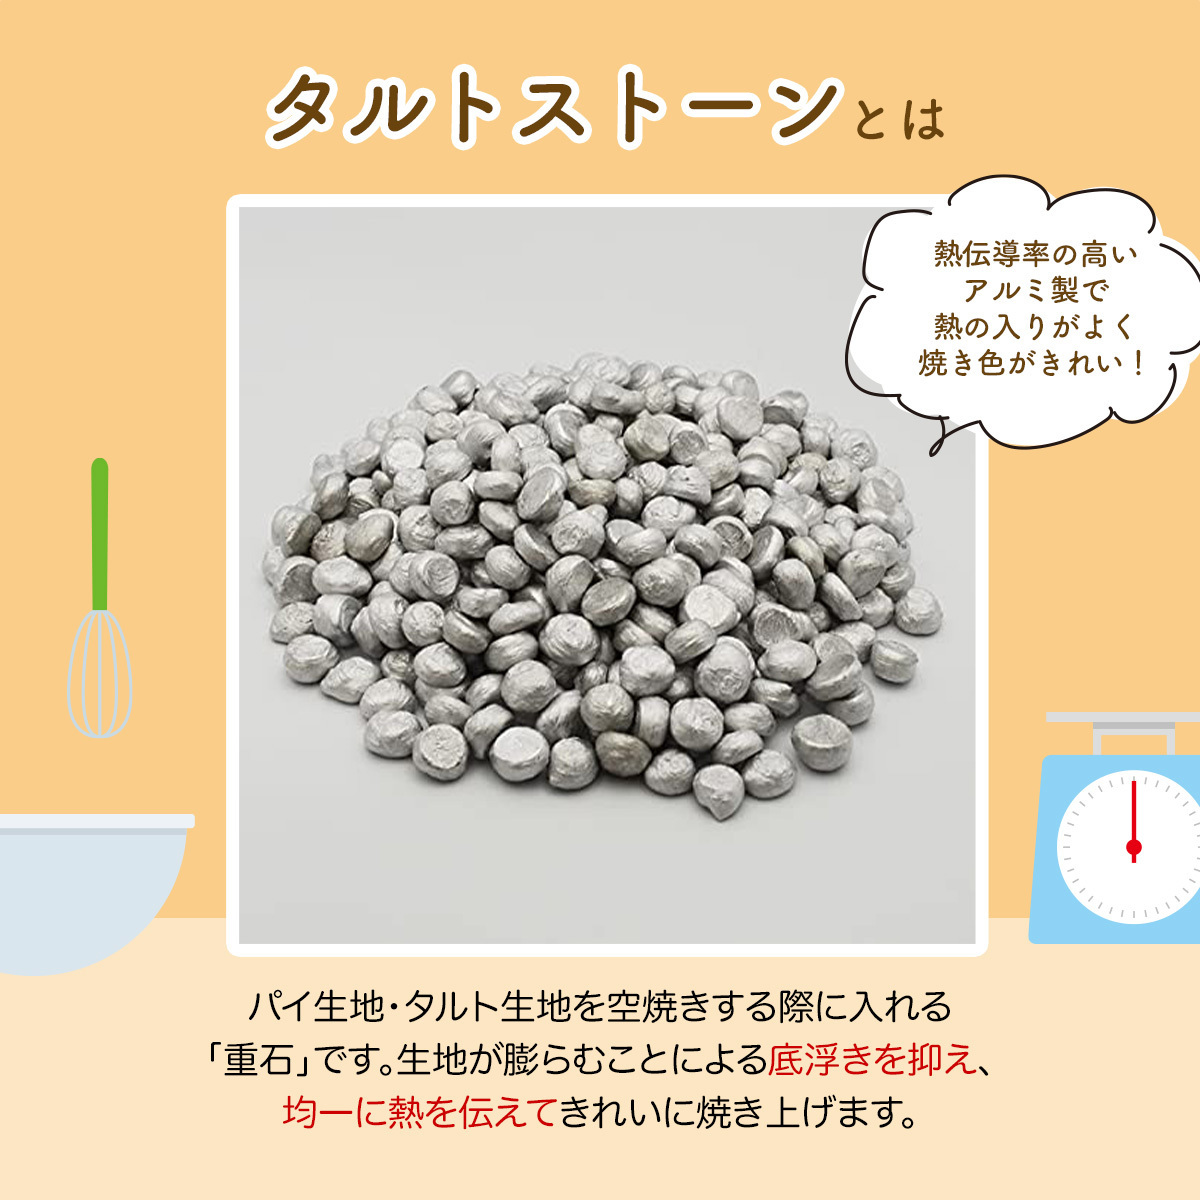 日本製 業務用 タルトストーン 500g アルミ製 タルト パイ キッシュ タルトケーキ 生地 おもり 重り 重し 重石 お菓子作り 手作りの画像3